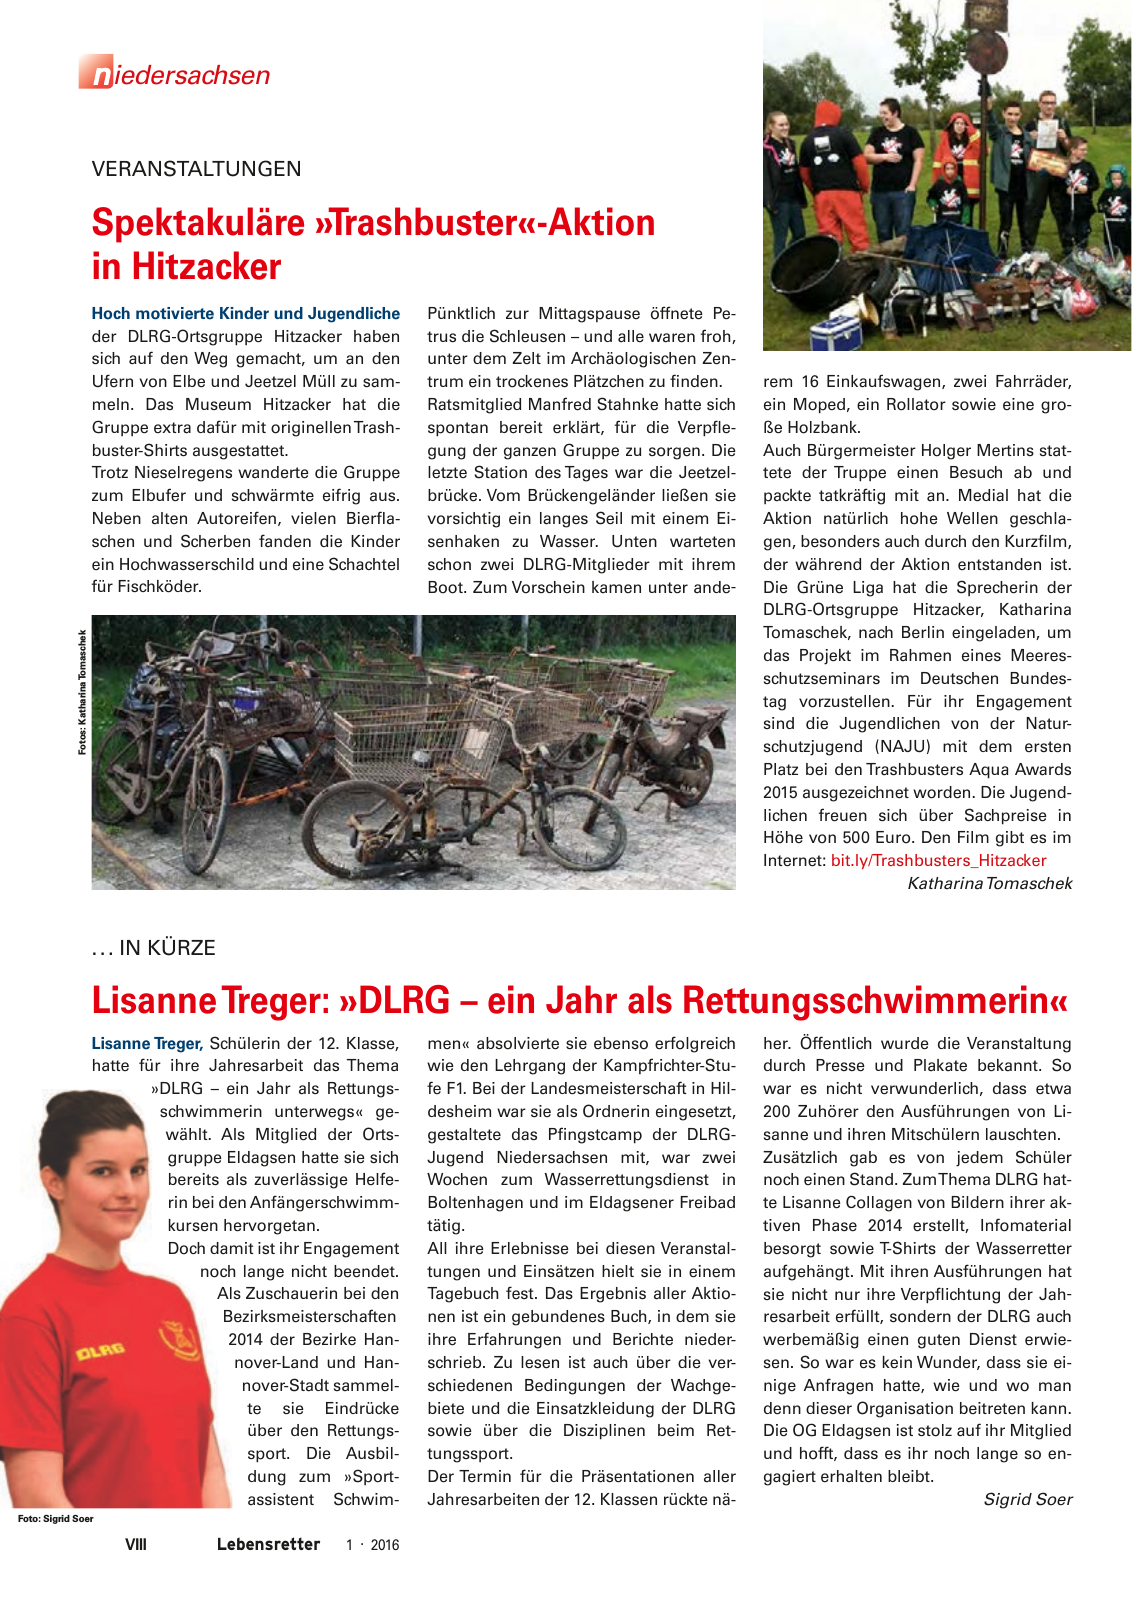 Vorschau Lebensretter 1/2016 - Regionalausgabe Niedersachsen Seite 10